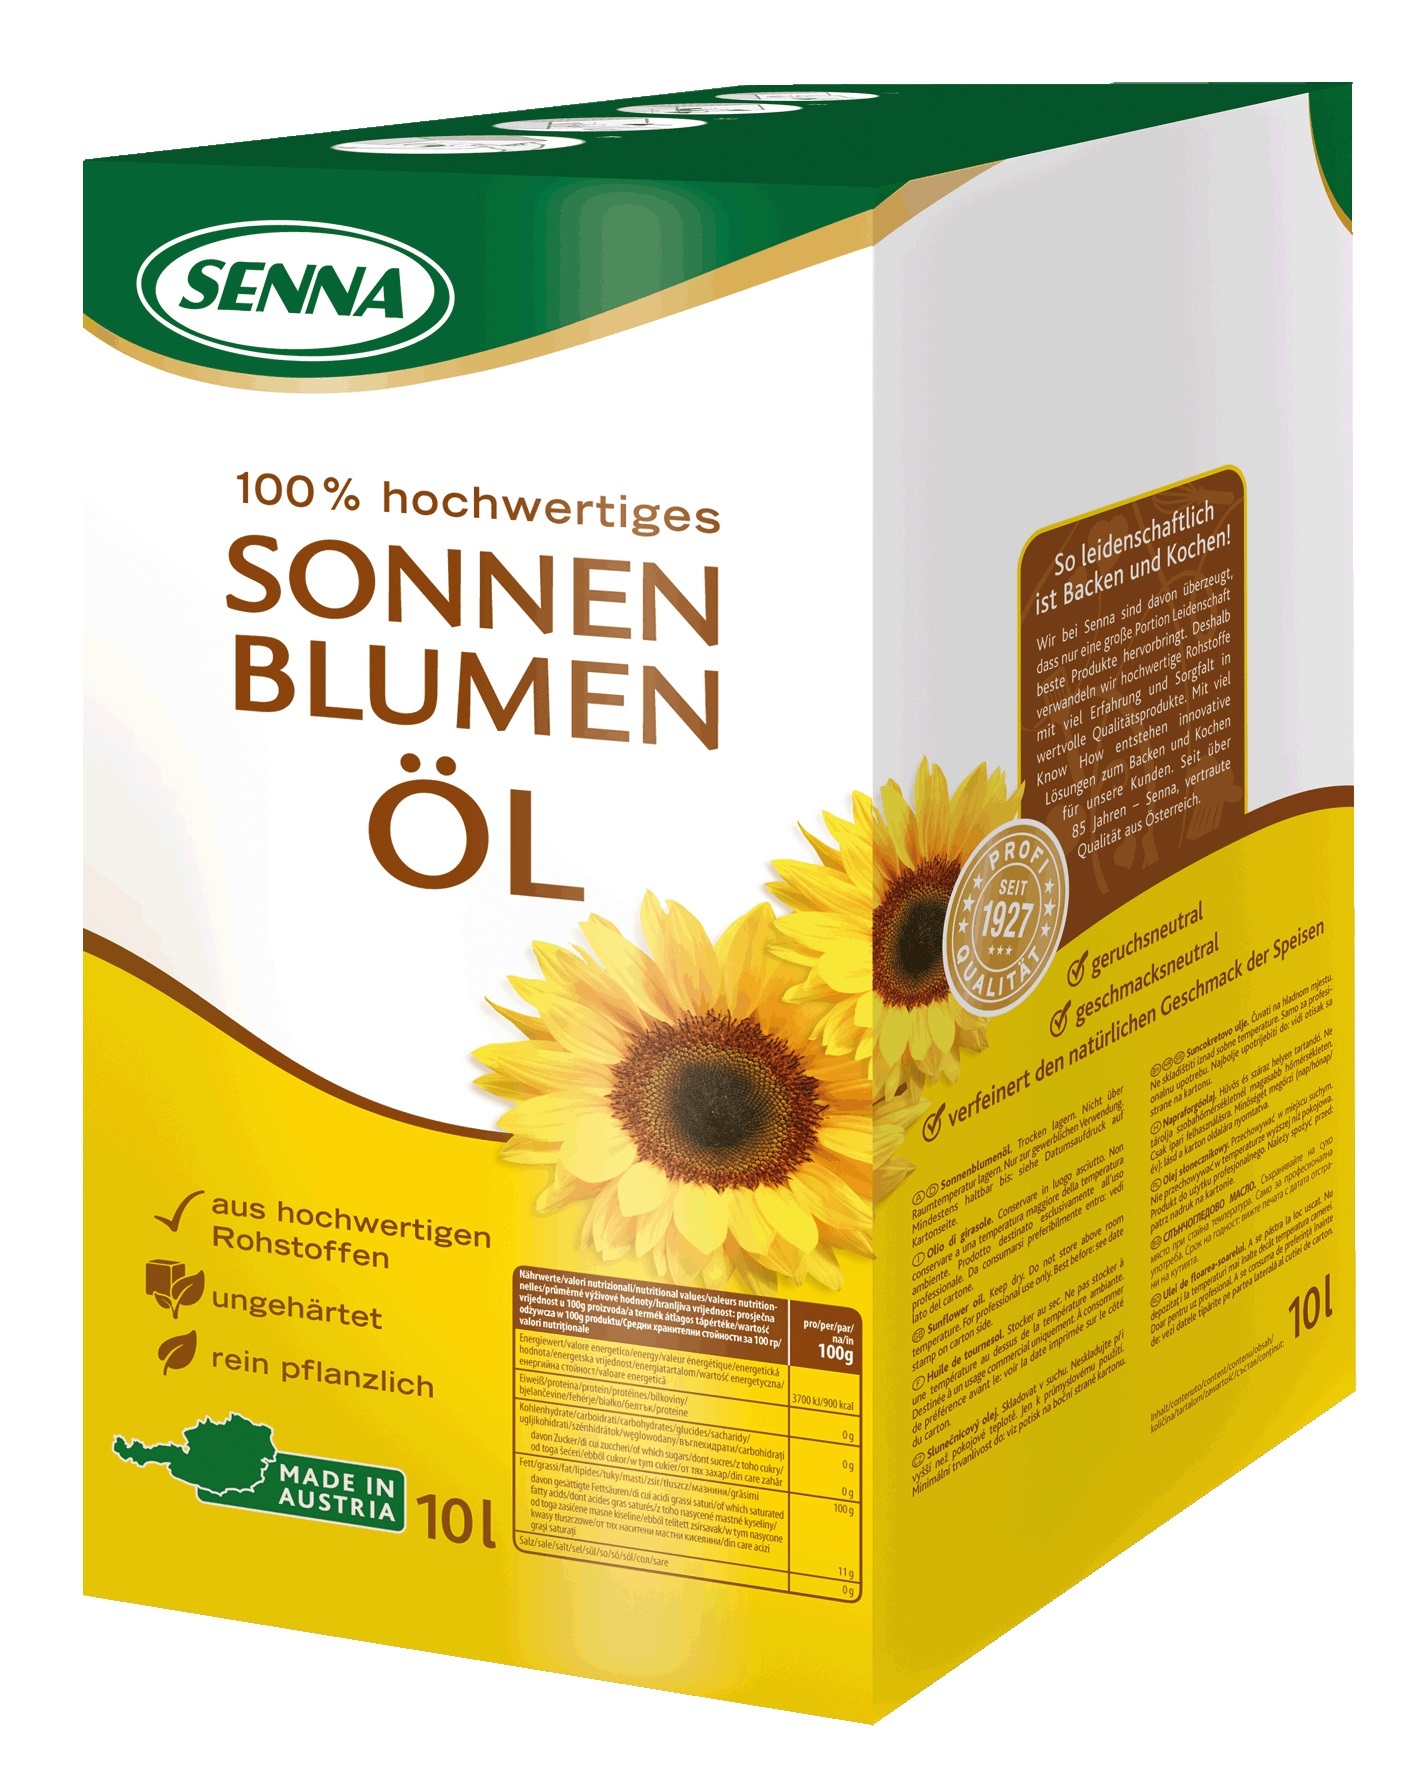 1253312 Senna Sonnenblumenoel 10L Bibox